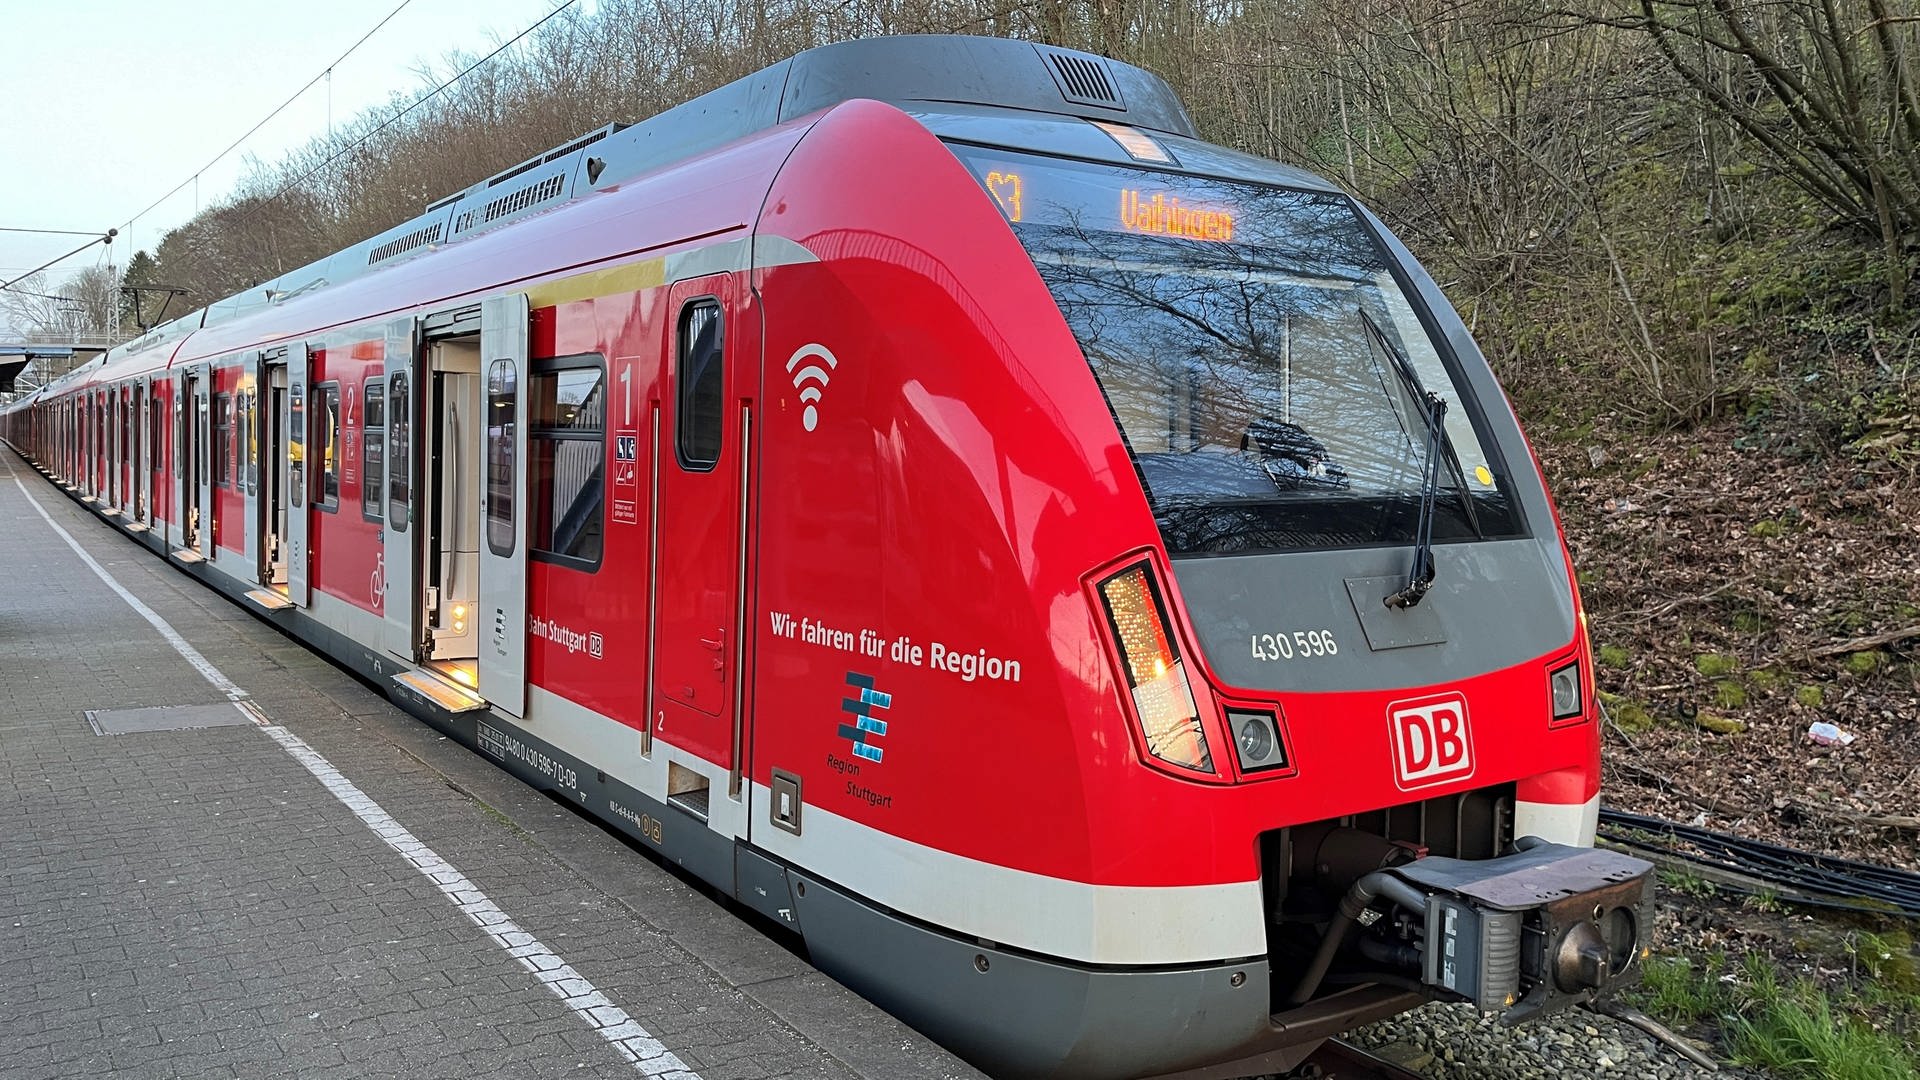 Meinung: Mein Frust über ständig neue Zugausfälle bei der S-Bahn Stuttgart